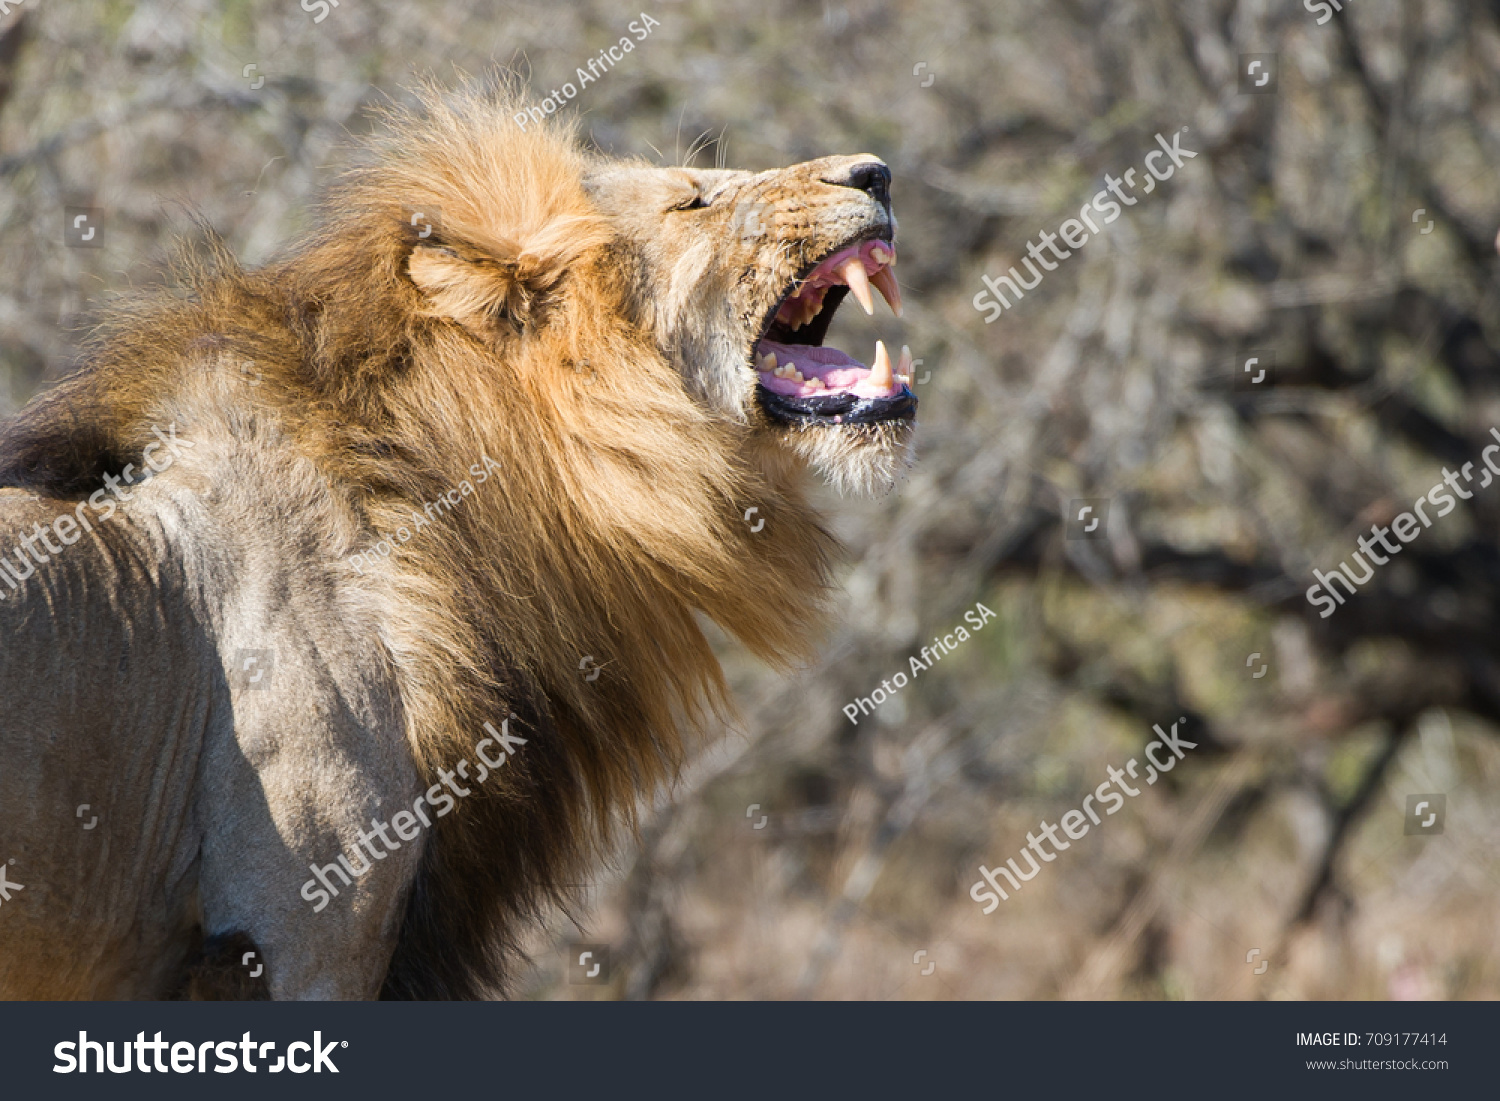 Lion roaring  #709177414